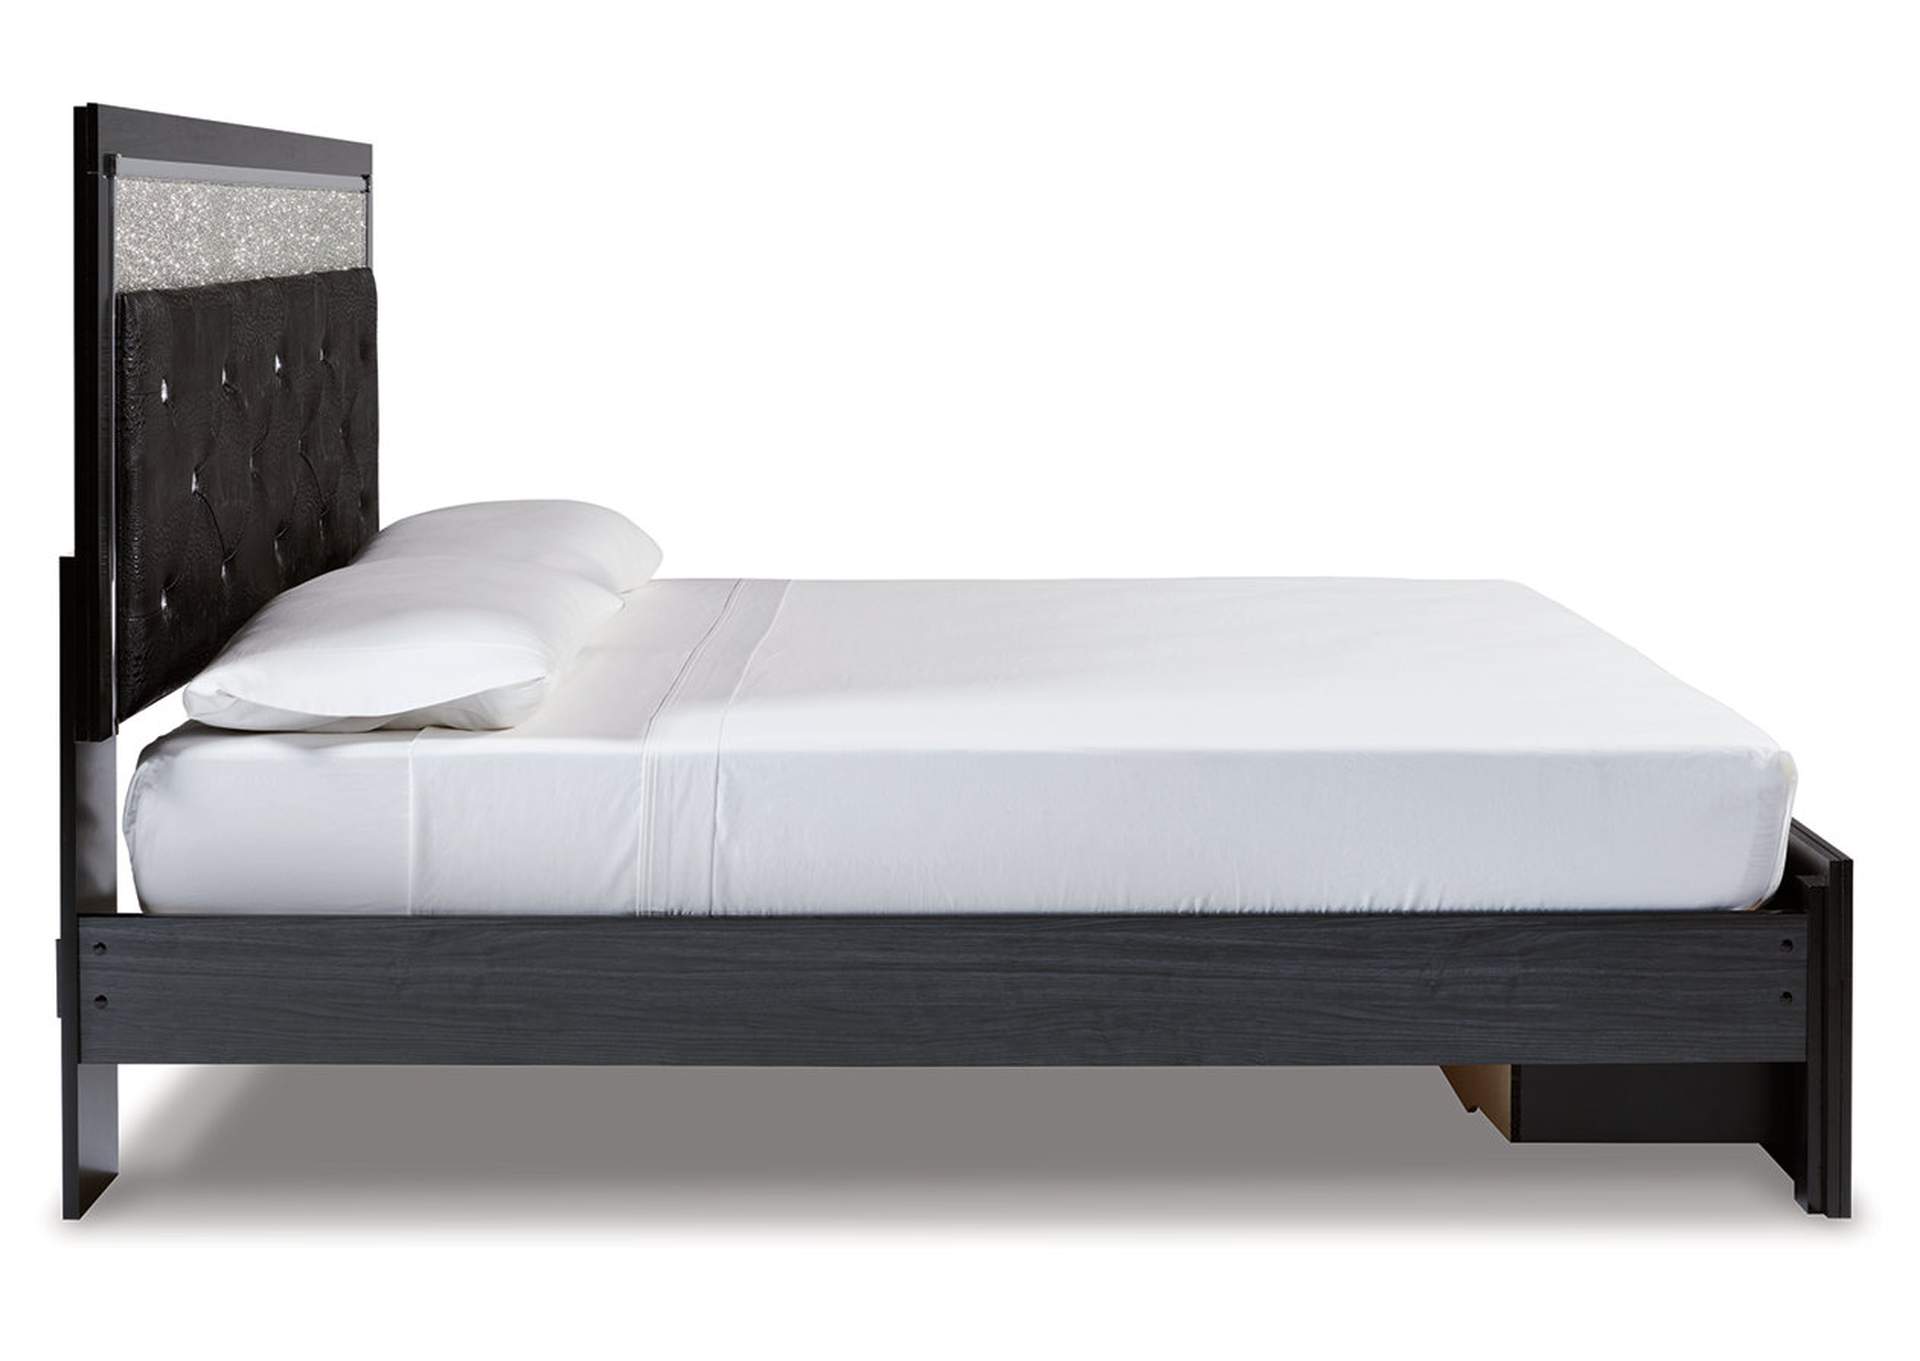 Kaydell King Upholstered Panel Storage Platform Bed with Dresser,Signature Design By Ashley